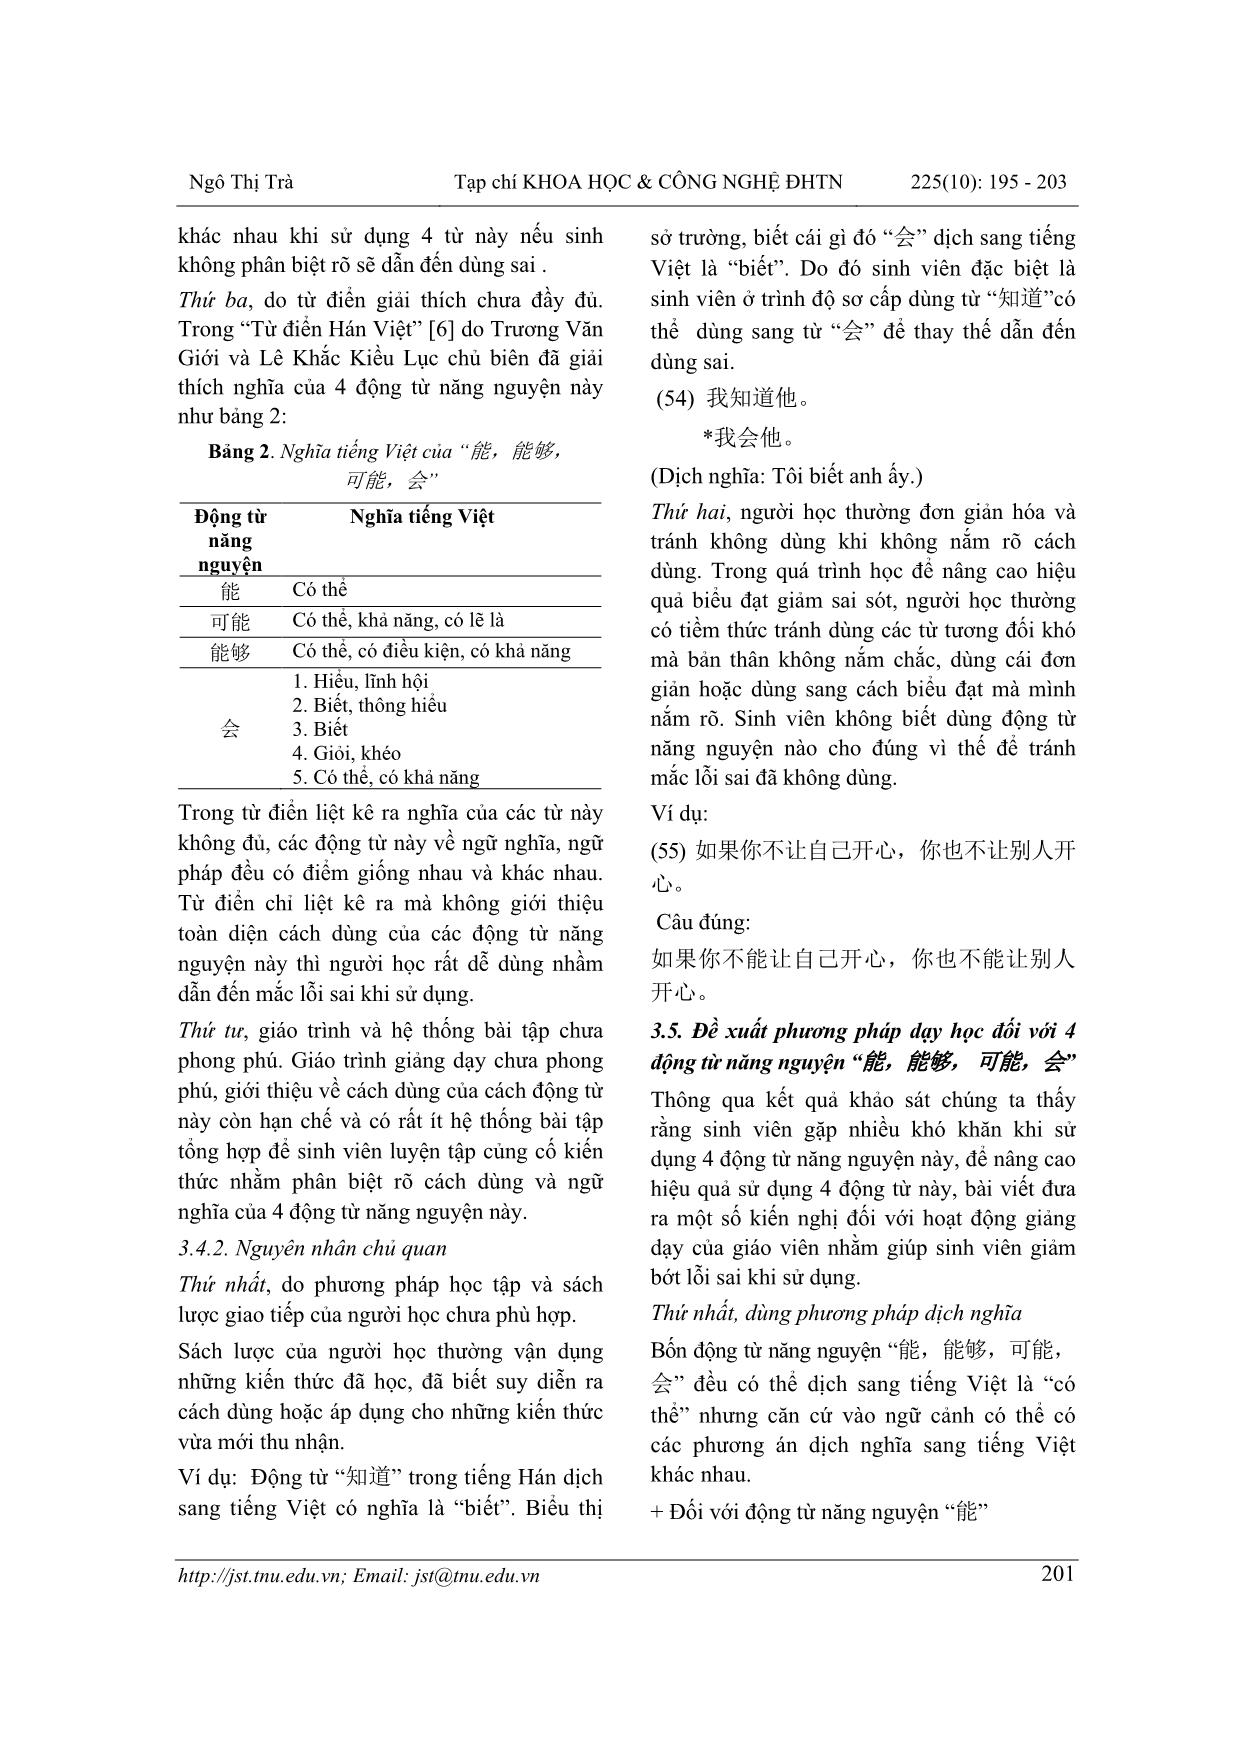 Phân biệt động từ năng nguyện “能, 能够, 可能, 会” trong tiếng Hán hiện đại và định hướng giảng dạy trang 7